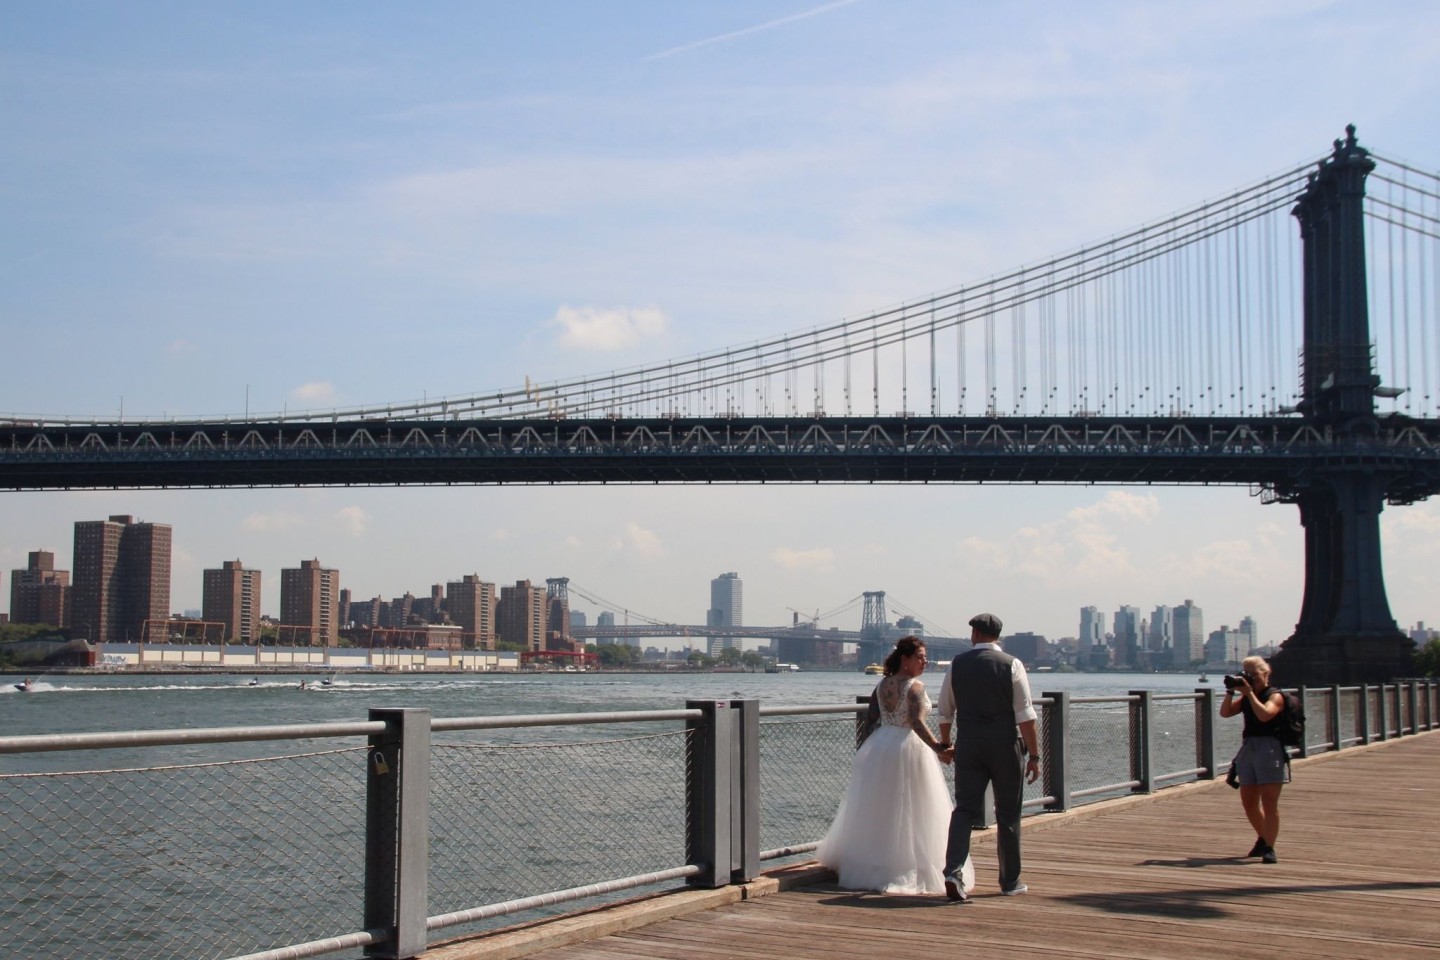 Eine Traumhochzeit vor der Skyline von Manhattan - das wünschen sich viele Paare.